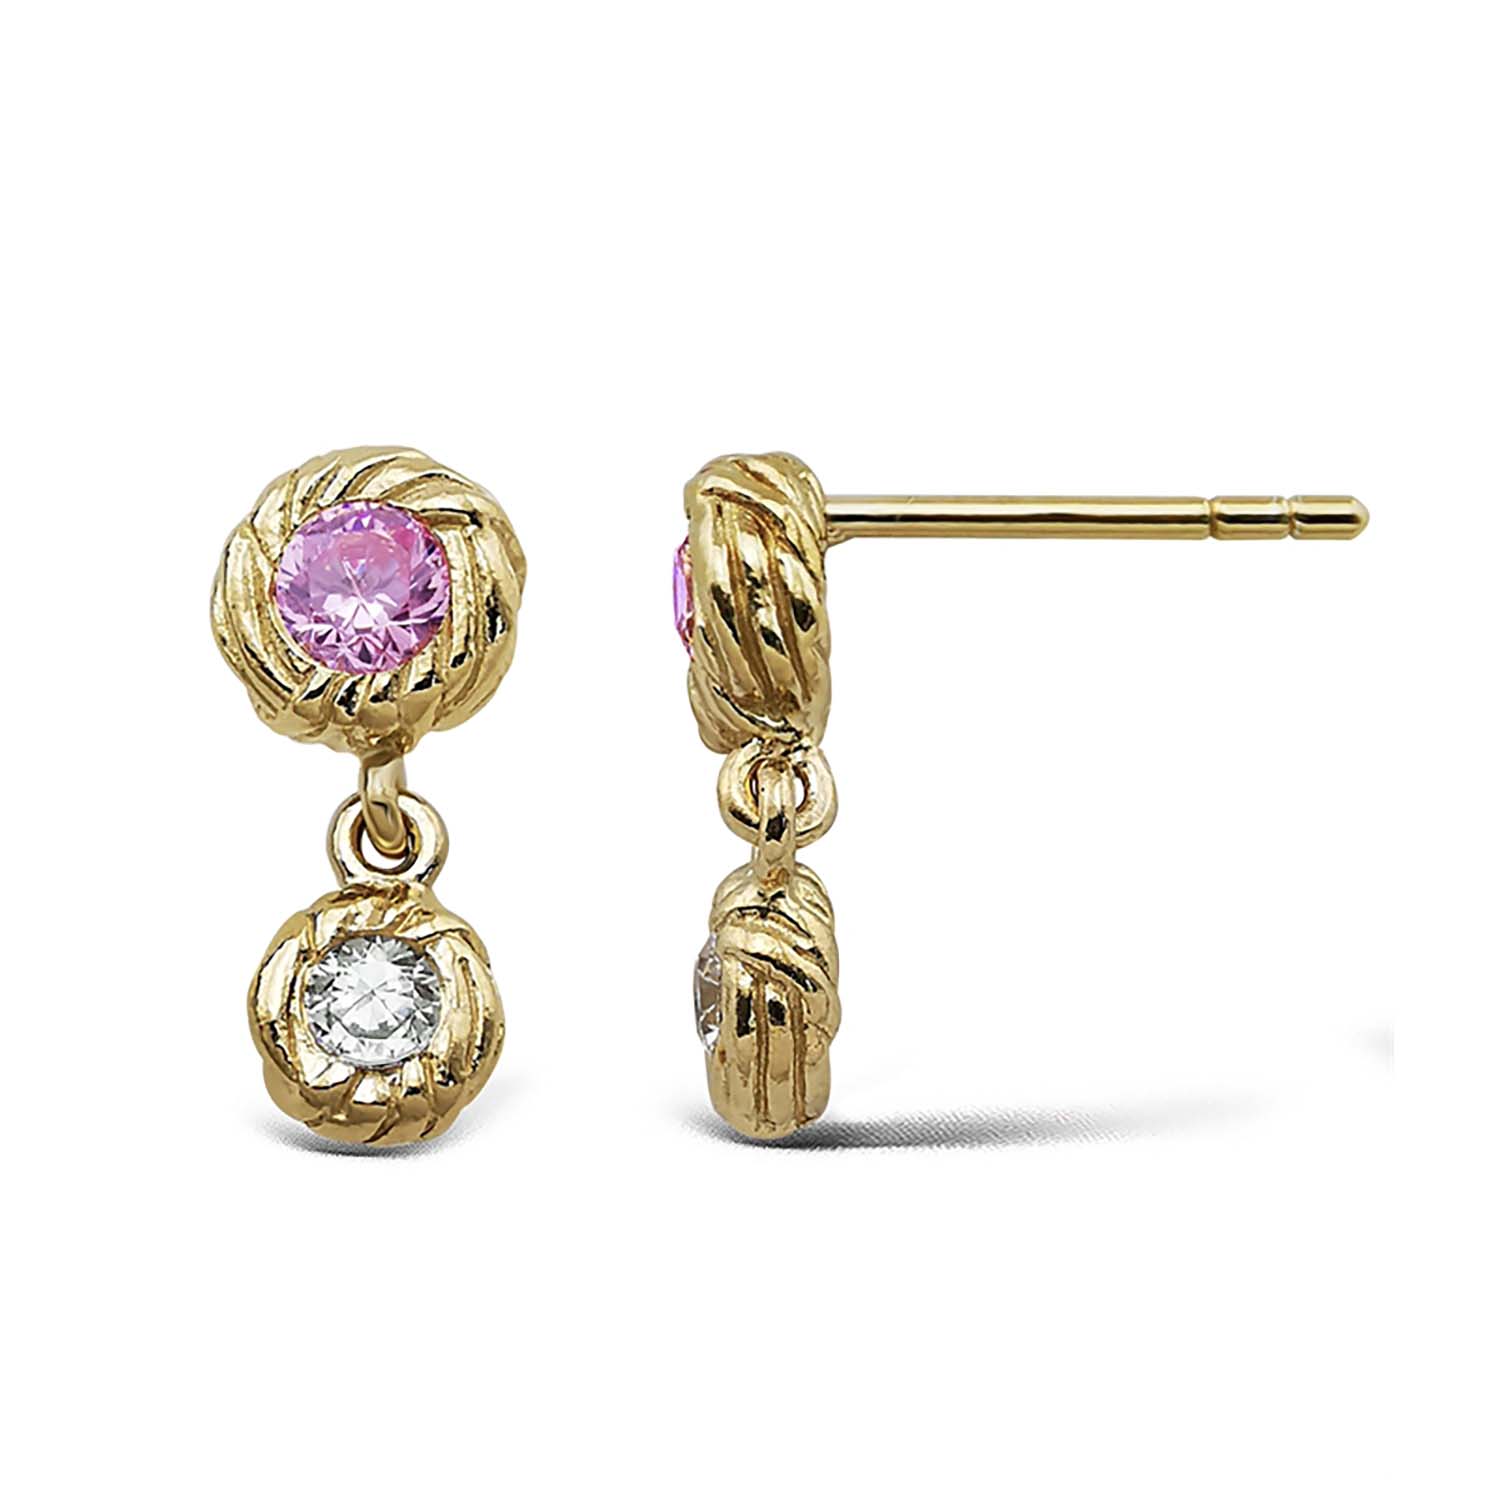 Se Jeberg Jewellery - I Am Gold Double Drop Pink øreringe 51965 Forgyldt sterlingsølv hos Vibholm.dk